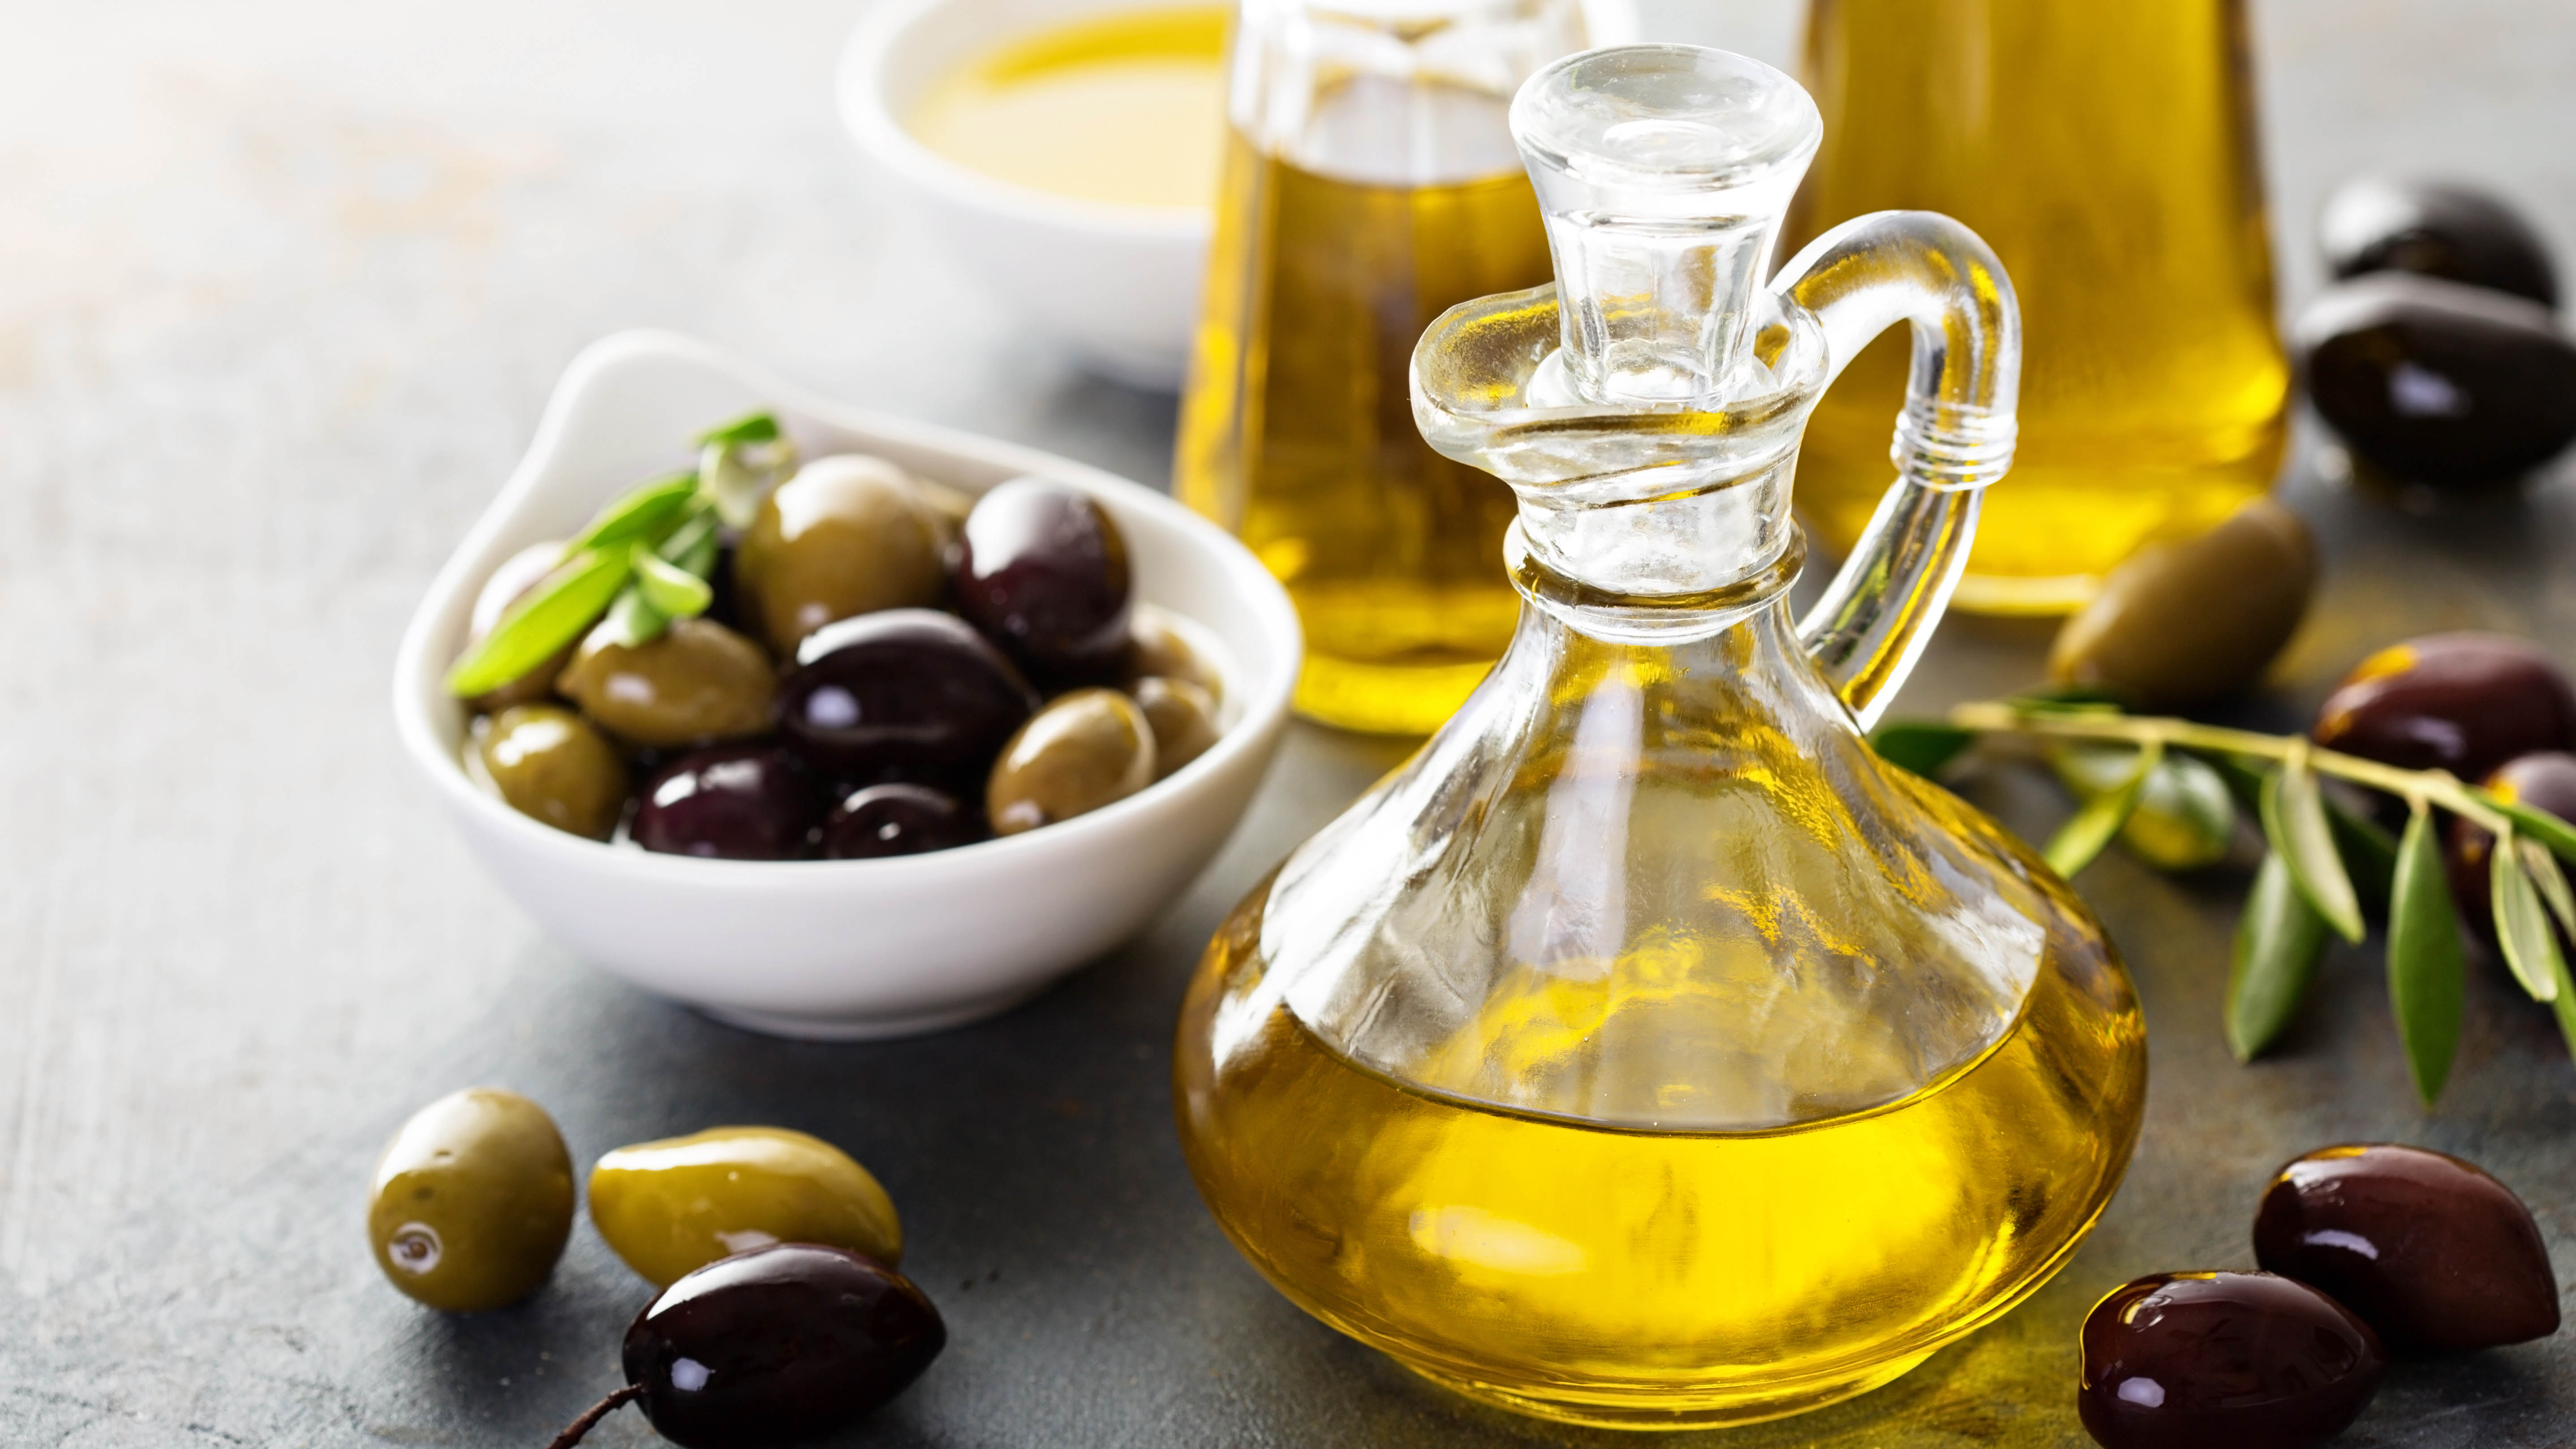 Bottle of olive oil and olives